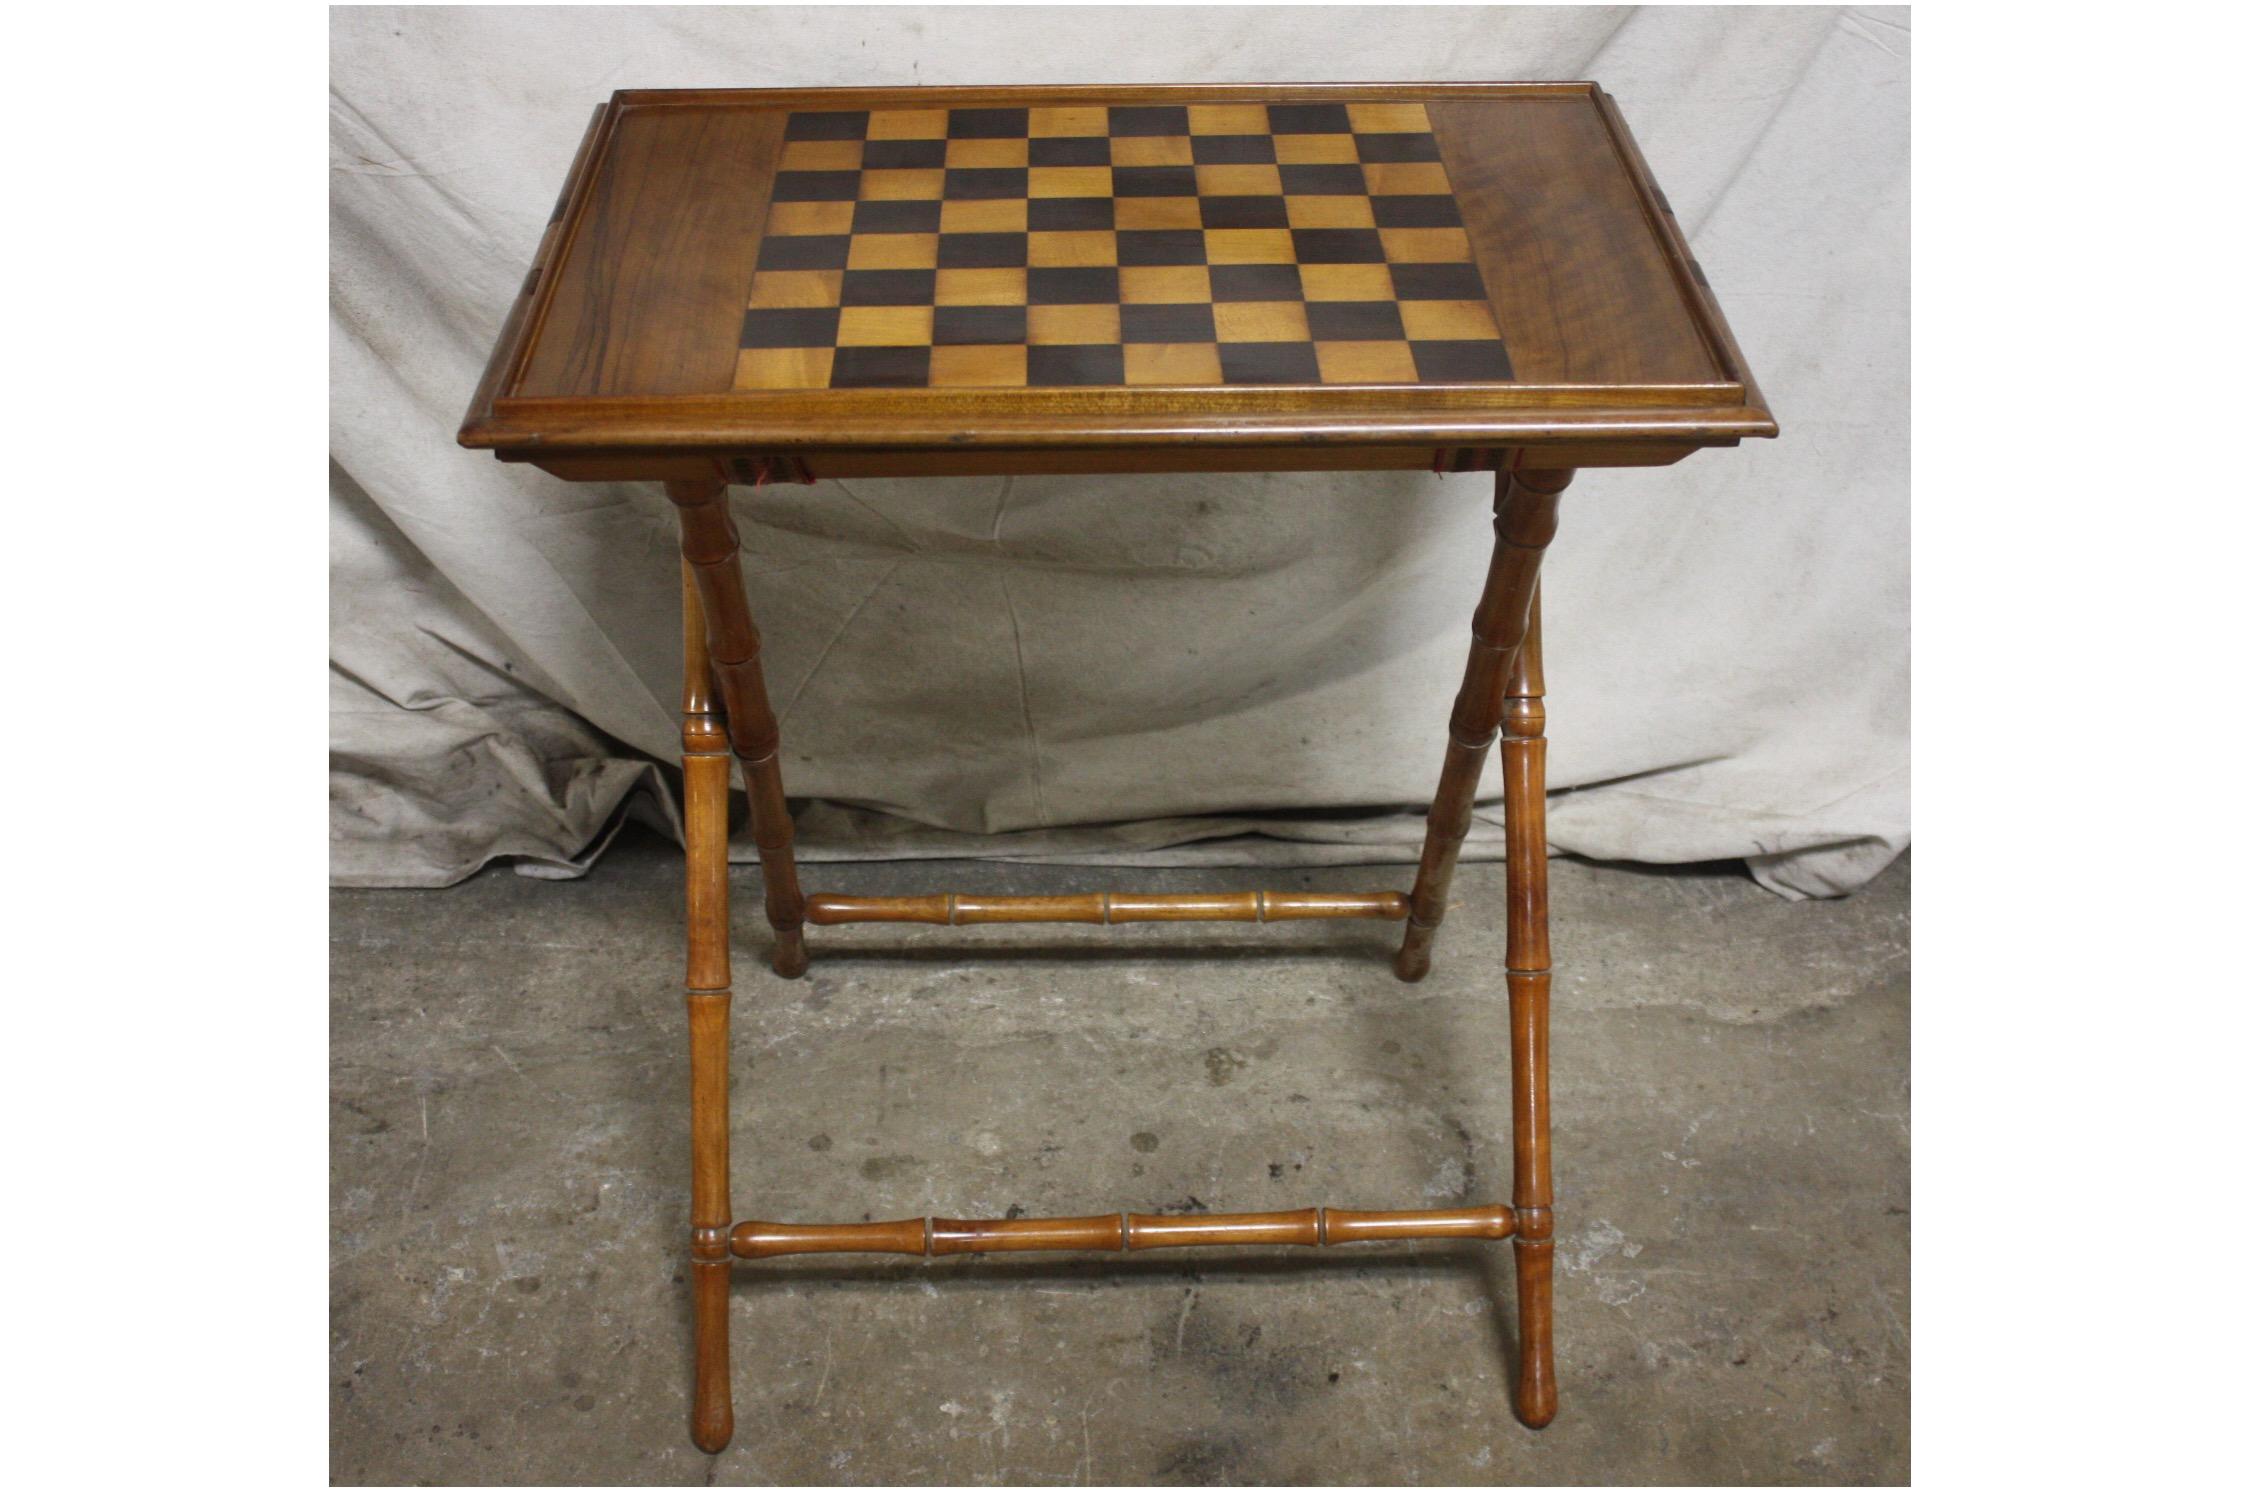 französischer Spieltisch oder Tabletttisch aus dem 19. Jahrhundert.